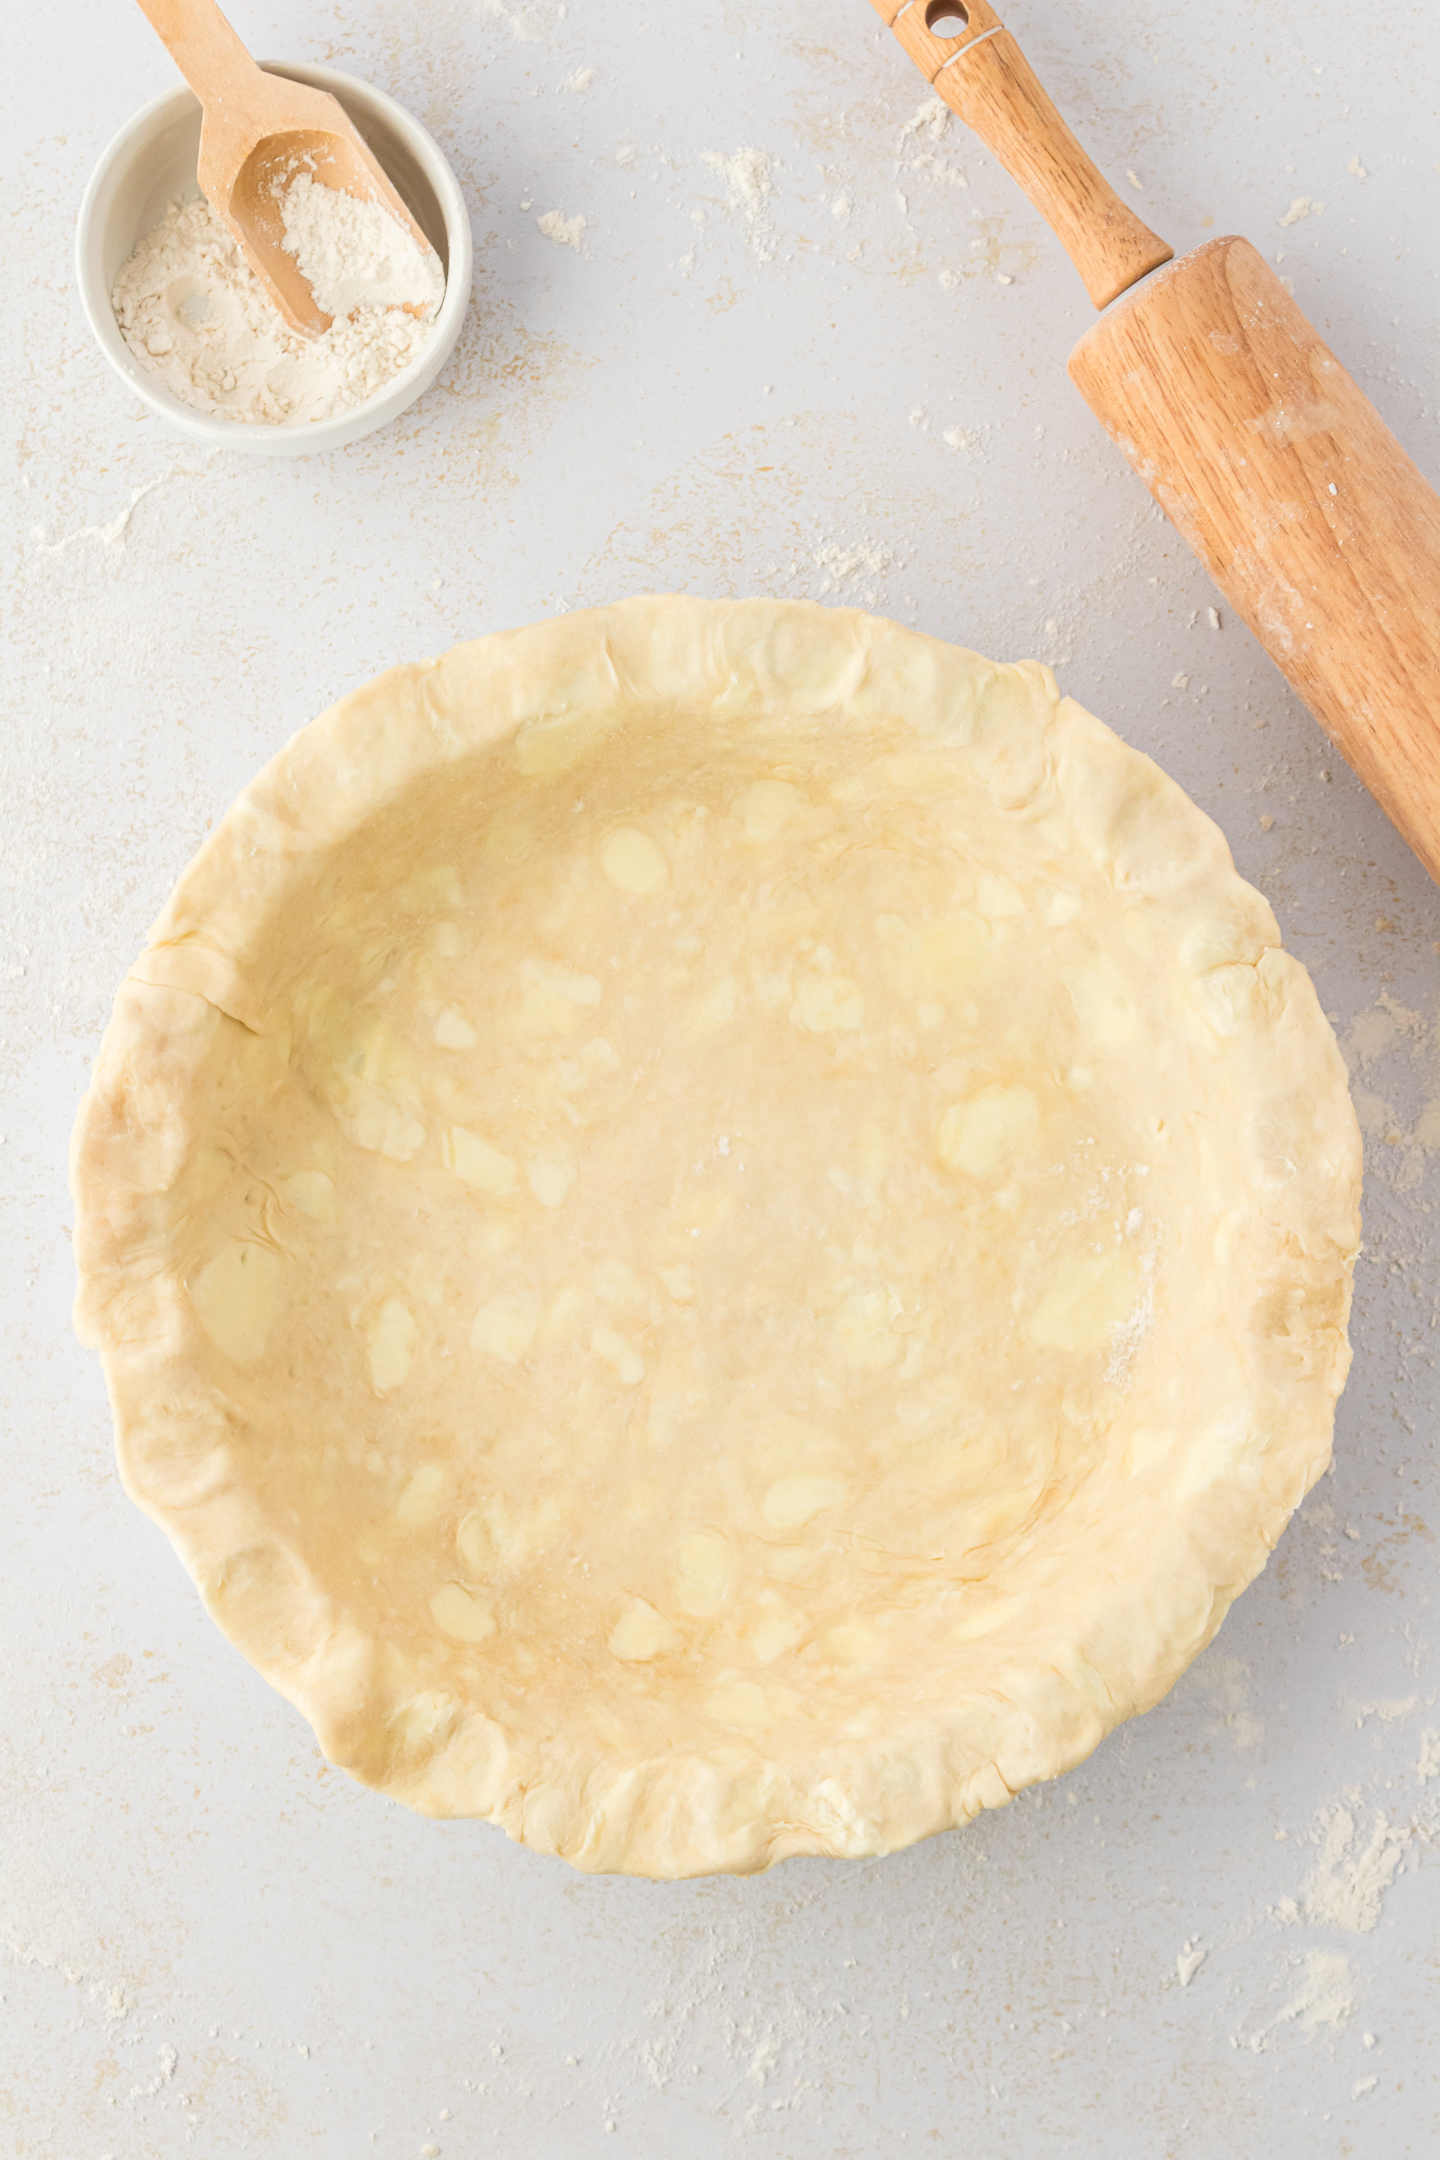 pie dough in pie pan